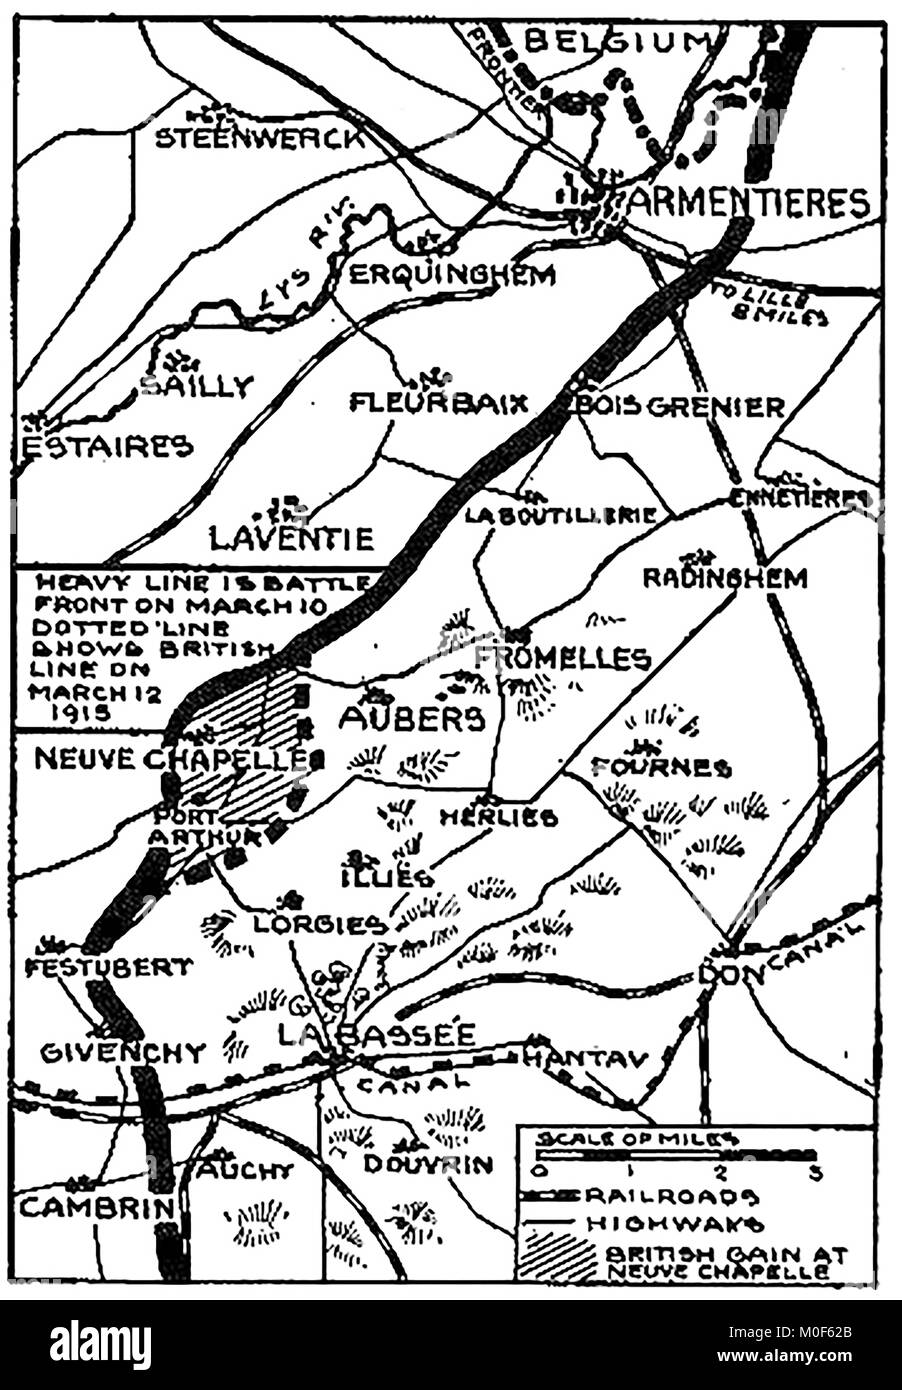 WWI-A 1917 Karte mit militärischen Aktivitäten in der 1914-1918 Erster Weltkrieg ERSTEN WELTKRIEG Karte der Schlacht bei Neuve Chapelle 1915 und britischen Linien im März 1915 Stockfoto